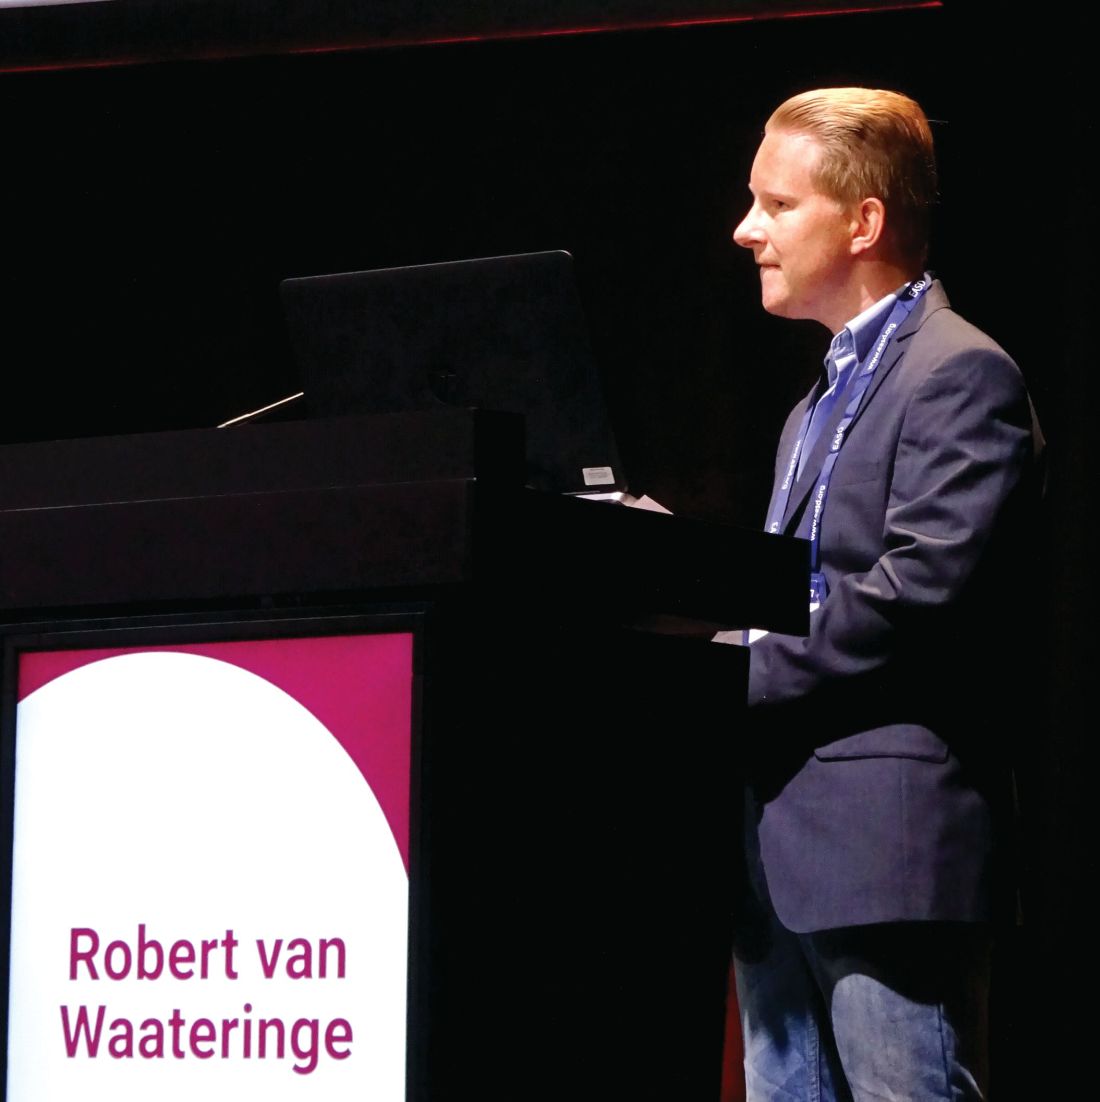 Dr. Robert van Waateringe of University Medical Centre Groningen, the Netherlands